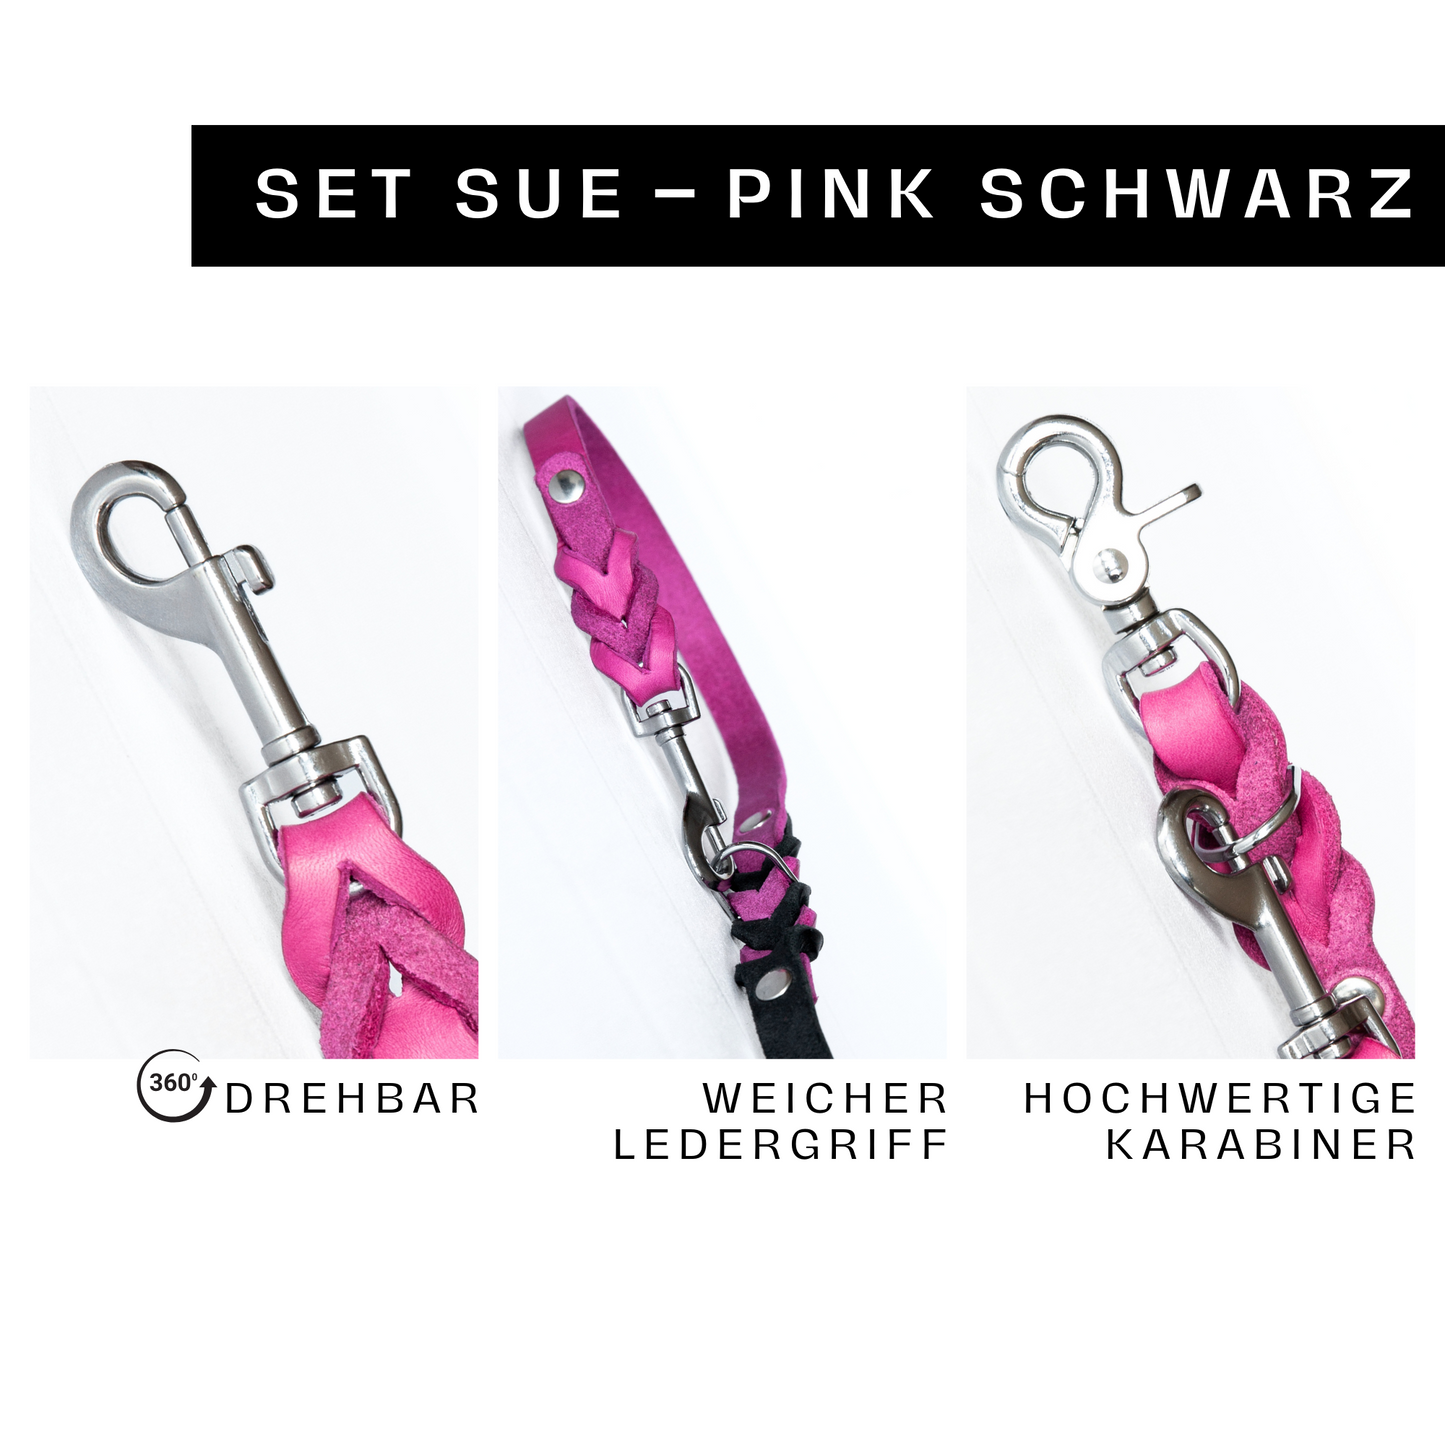 Set SUE handgefertigt aus Leder. Lederhalsband und Lederleine  in der Farbe Pink und Schwarz. Hundehalsband und Leine. Details